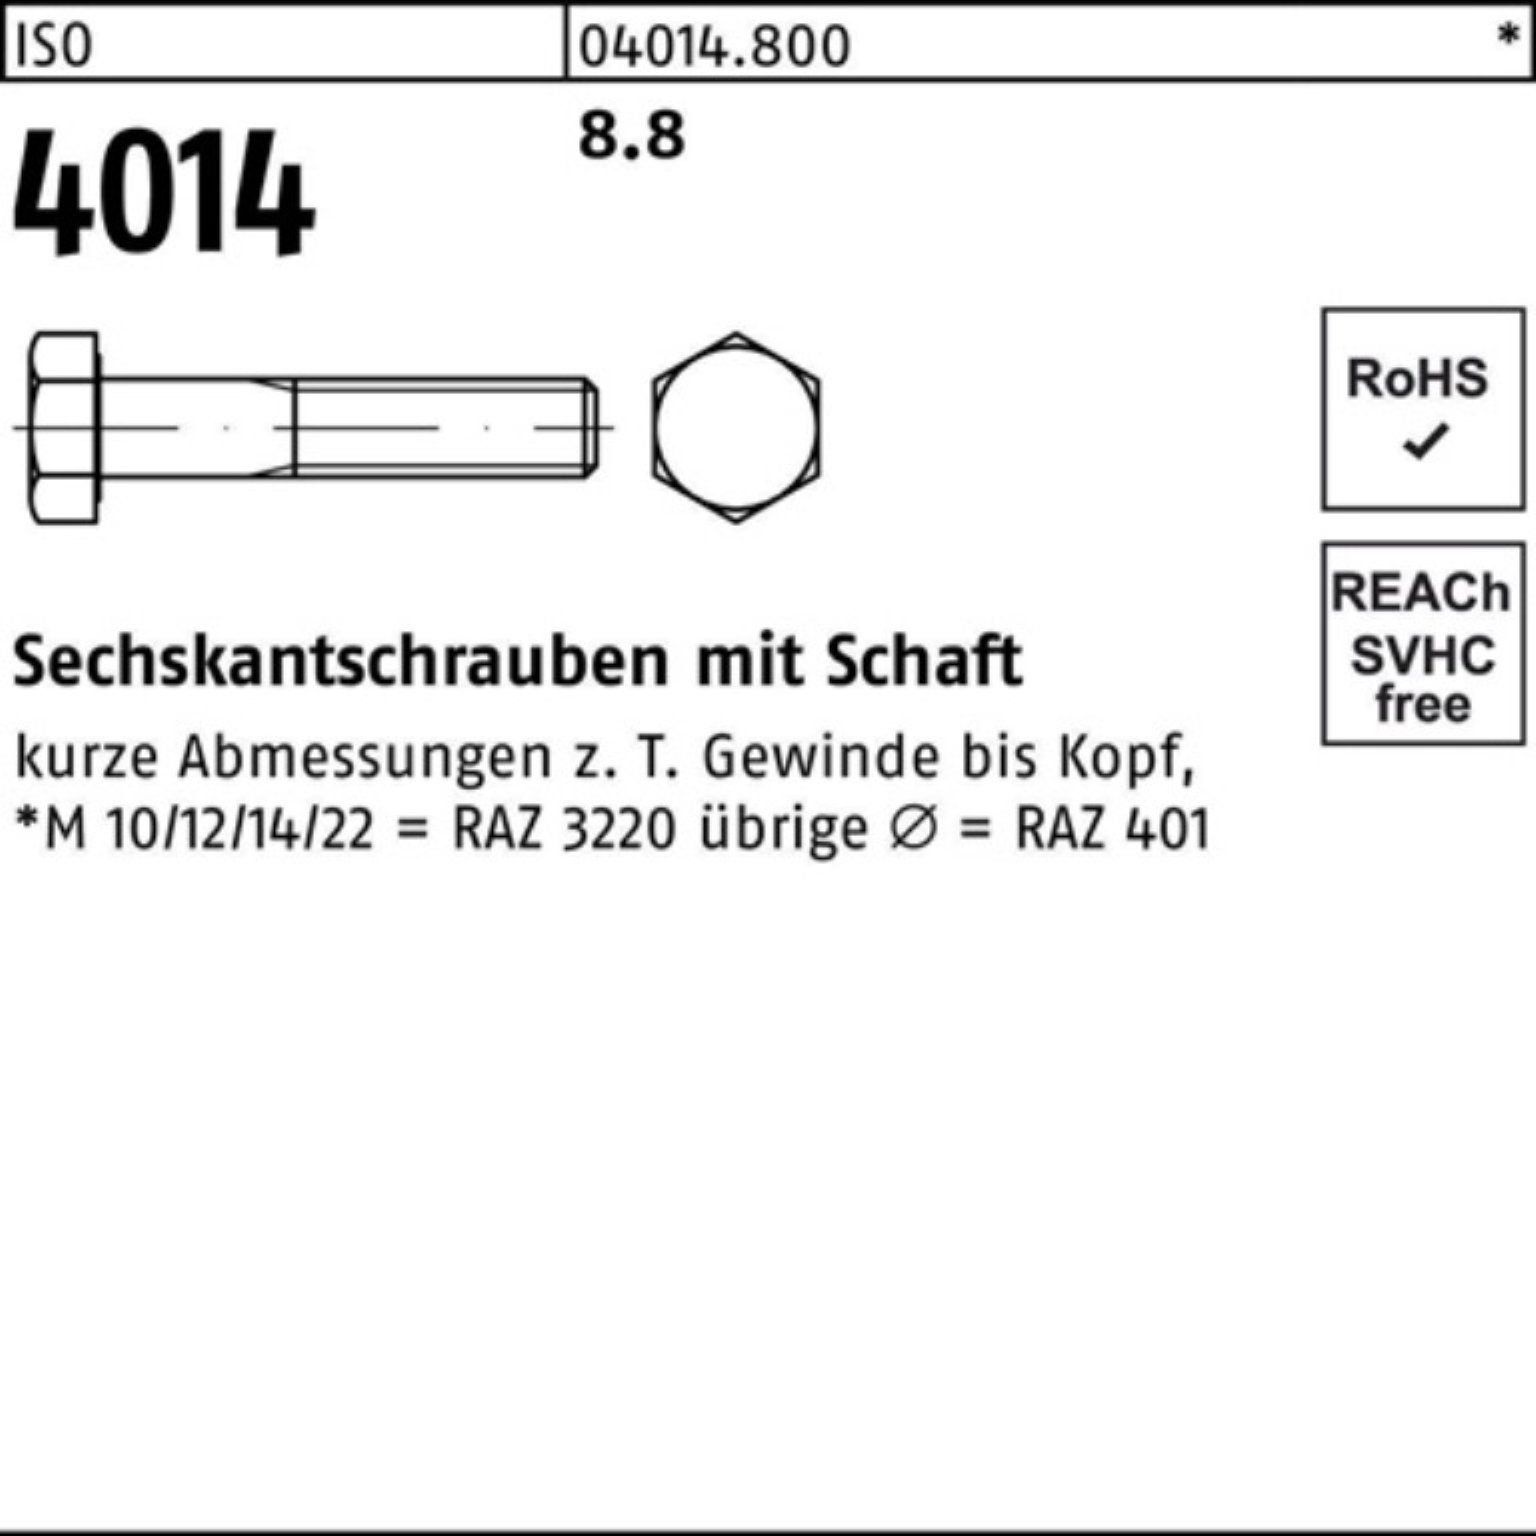 8.8 100er IS 145 Sechskantschraube 100 Bufab Pack M6x 4014 ISO Schaft Stück Sechskantschraube